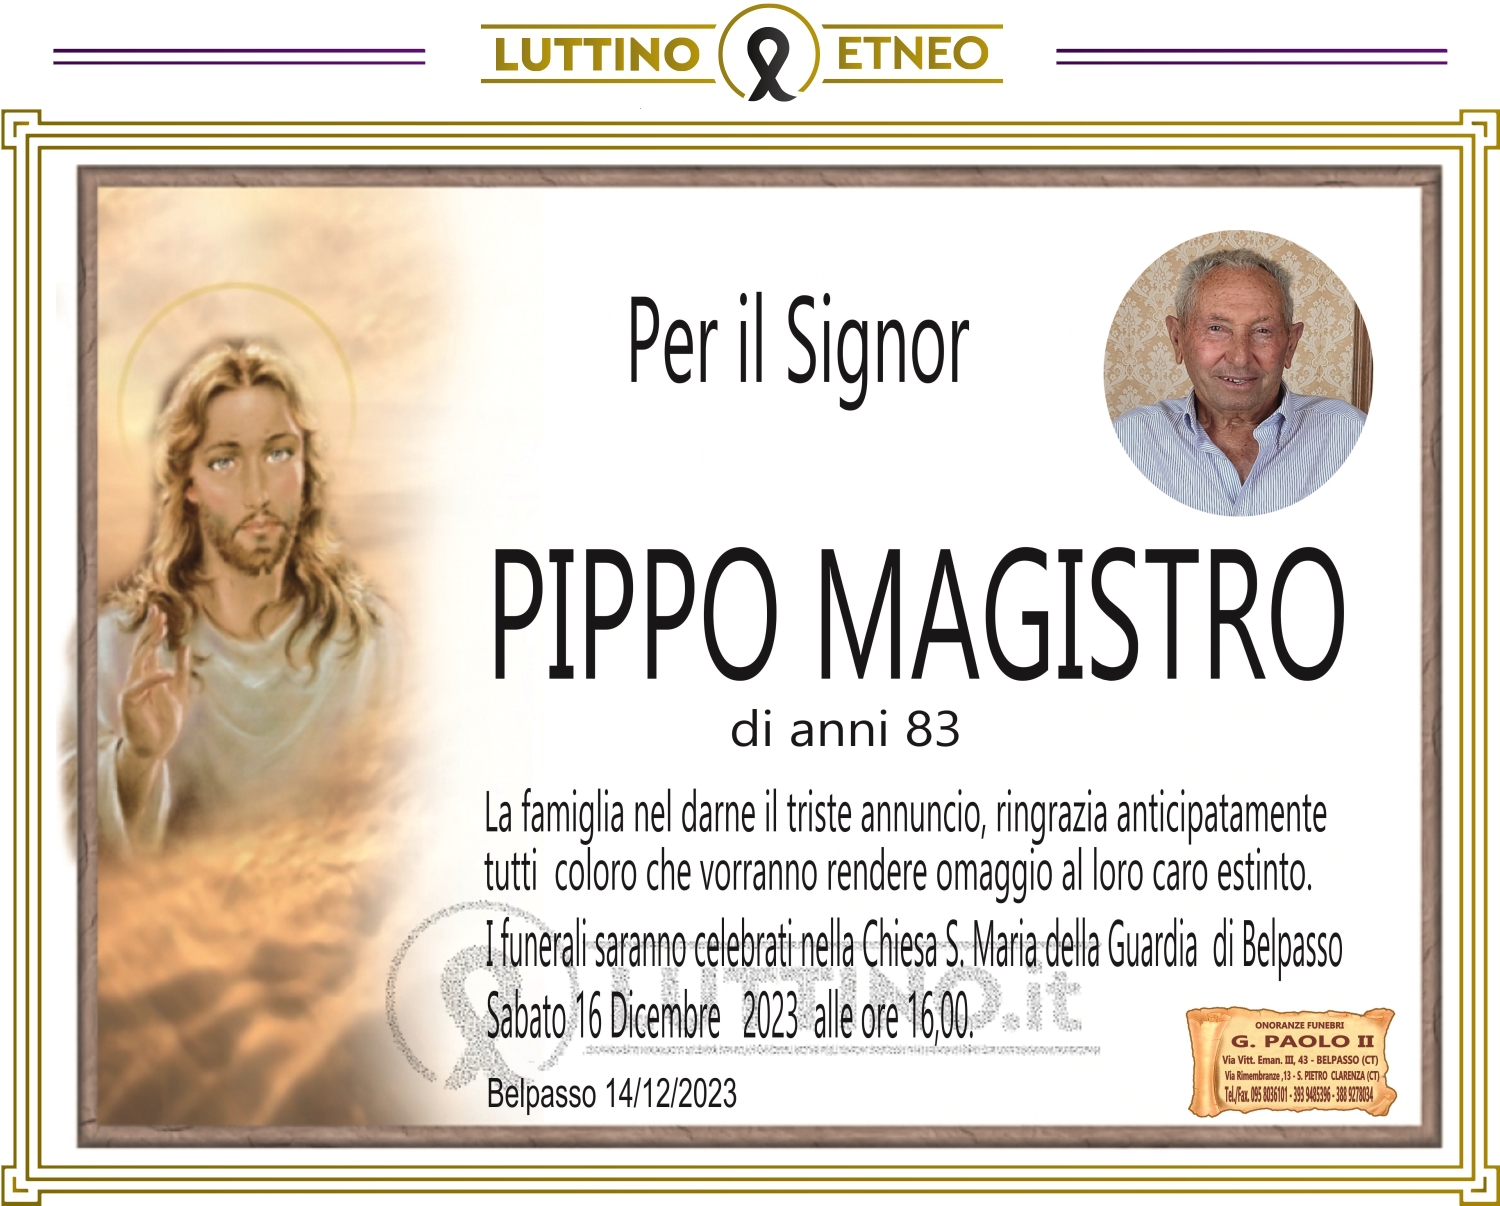 Pippo Magistro